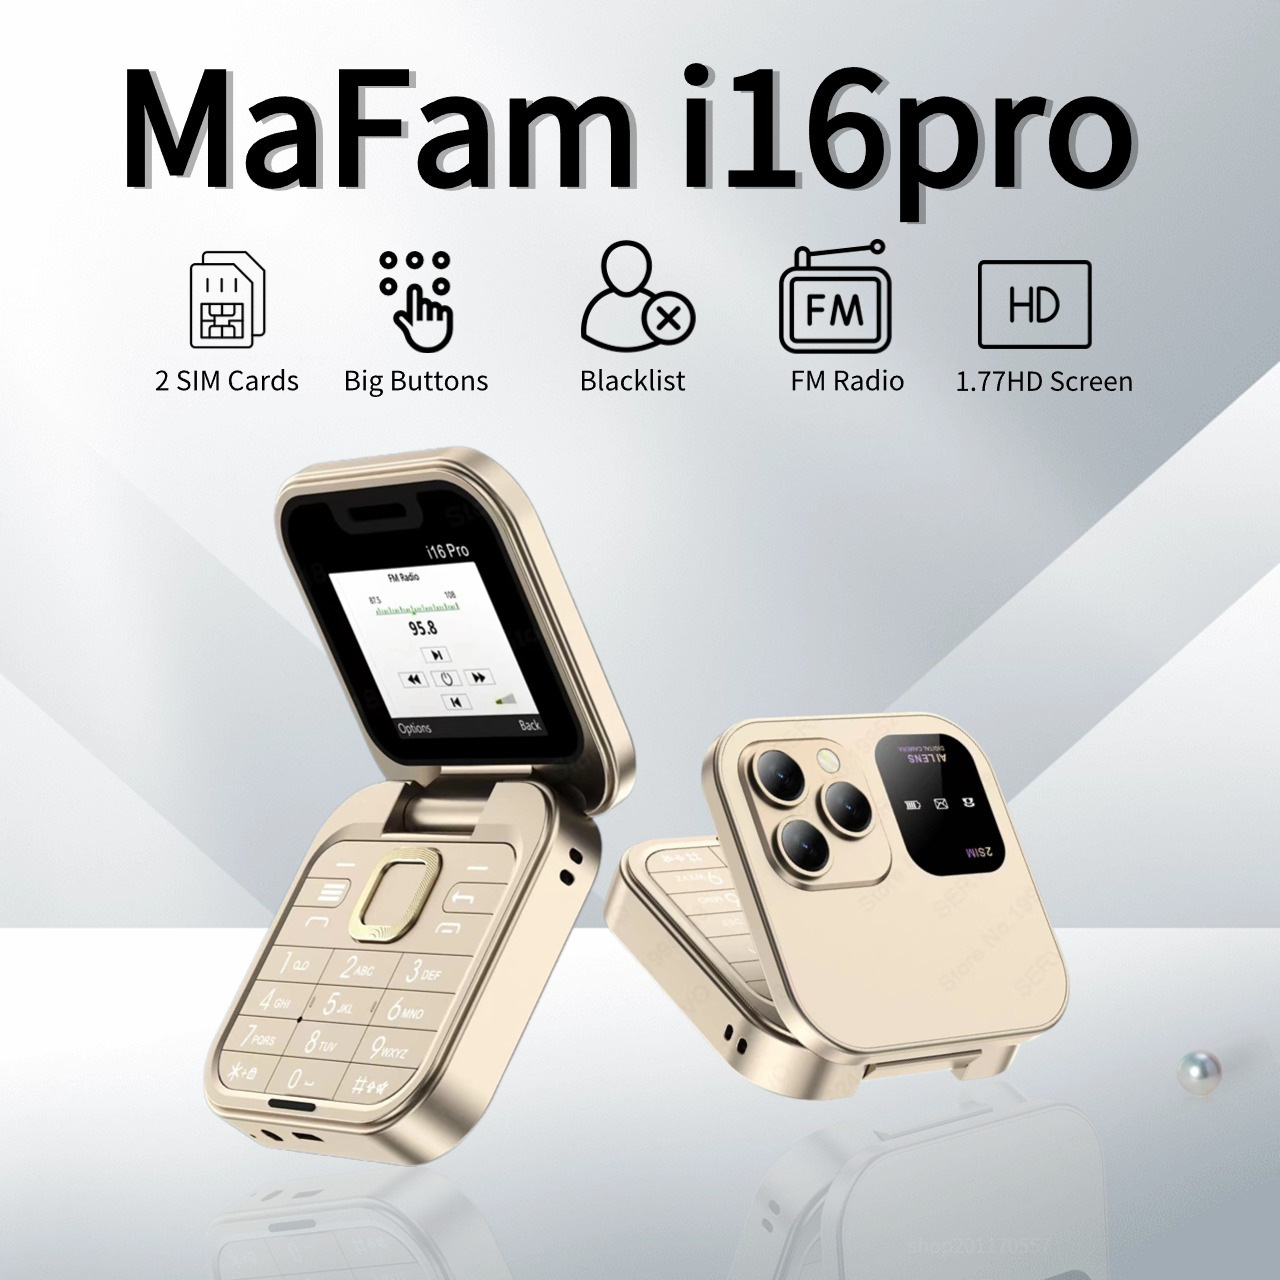 Mobil i16 Pro Mini Katlanır Telefon 2G GSM Çift SIM KARTI HIZLI ARAŞTIRMA KİLİTLERİ Telefon Video Oyuncusu 3.5mm FM Mini Flip Yaşlı Telefon Destek Birden Fazla Ülke Dilleri